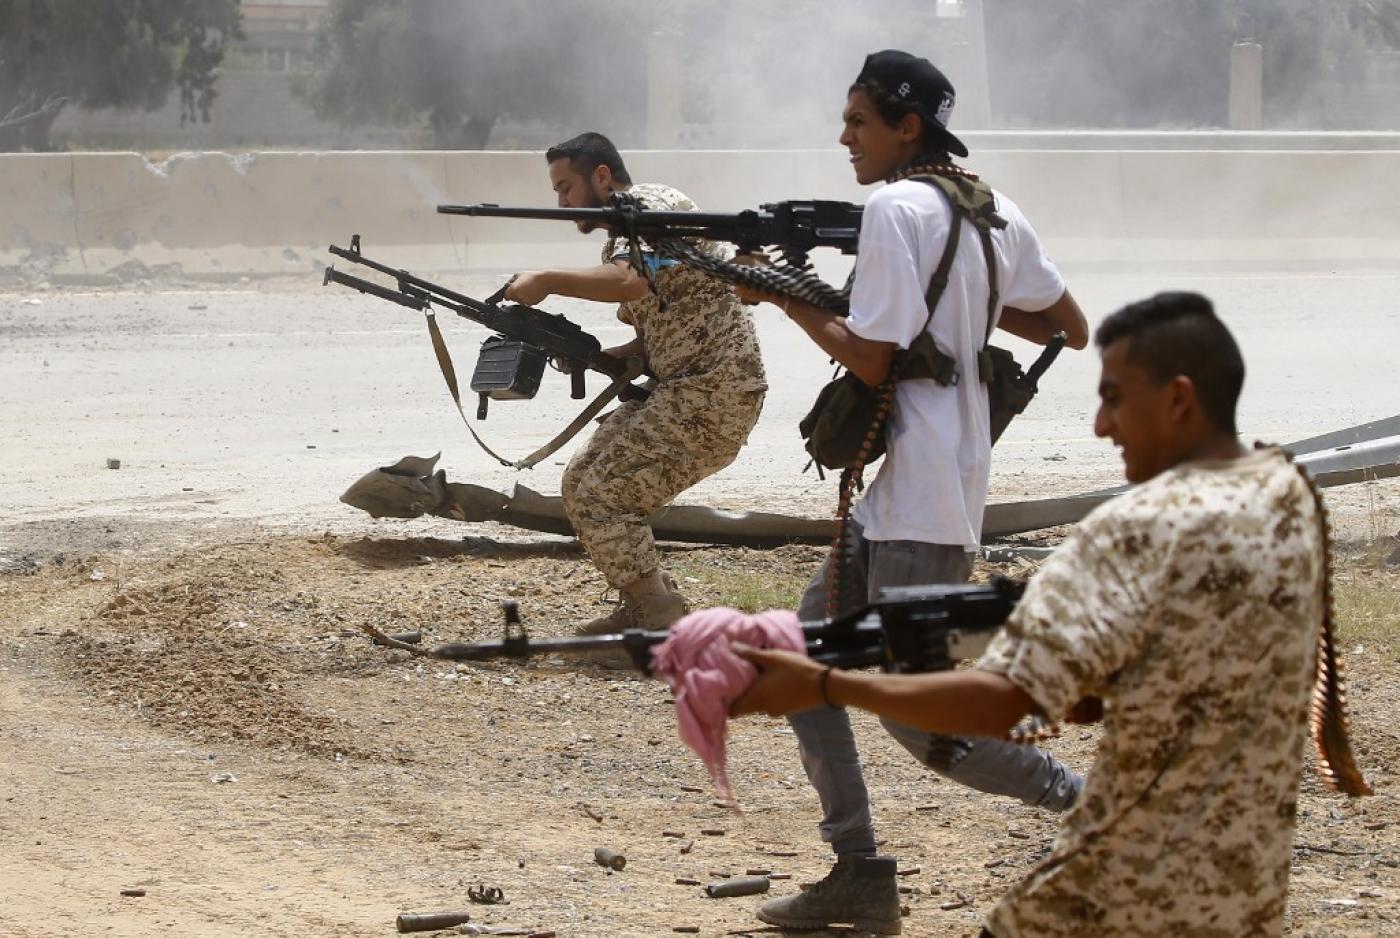 Λιβύη: Ξεκινάει την αποστολή της η επιχείρηση «Ειρήνη» – Θα ελέγχει πιθανή μεταφορά όπλων